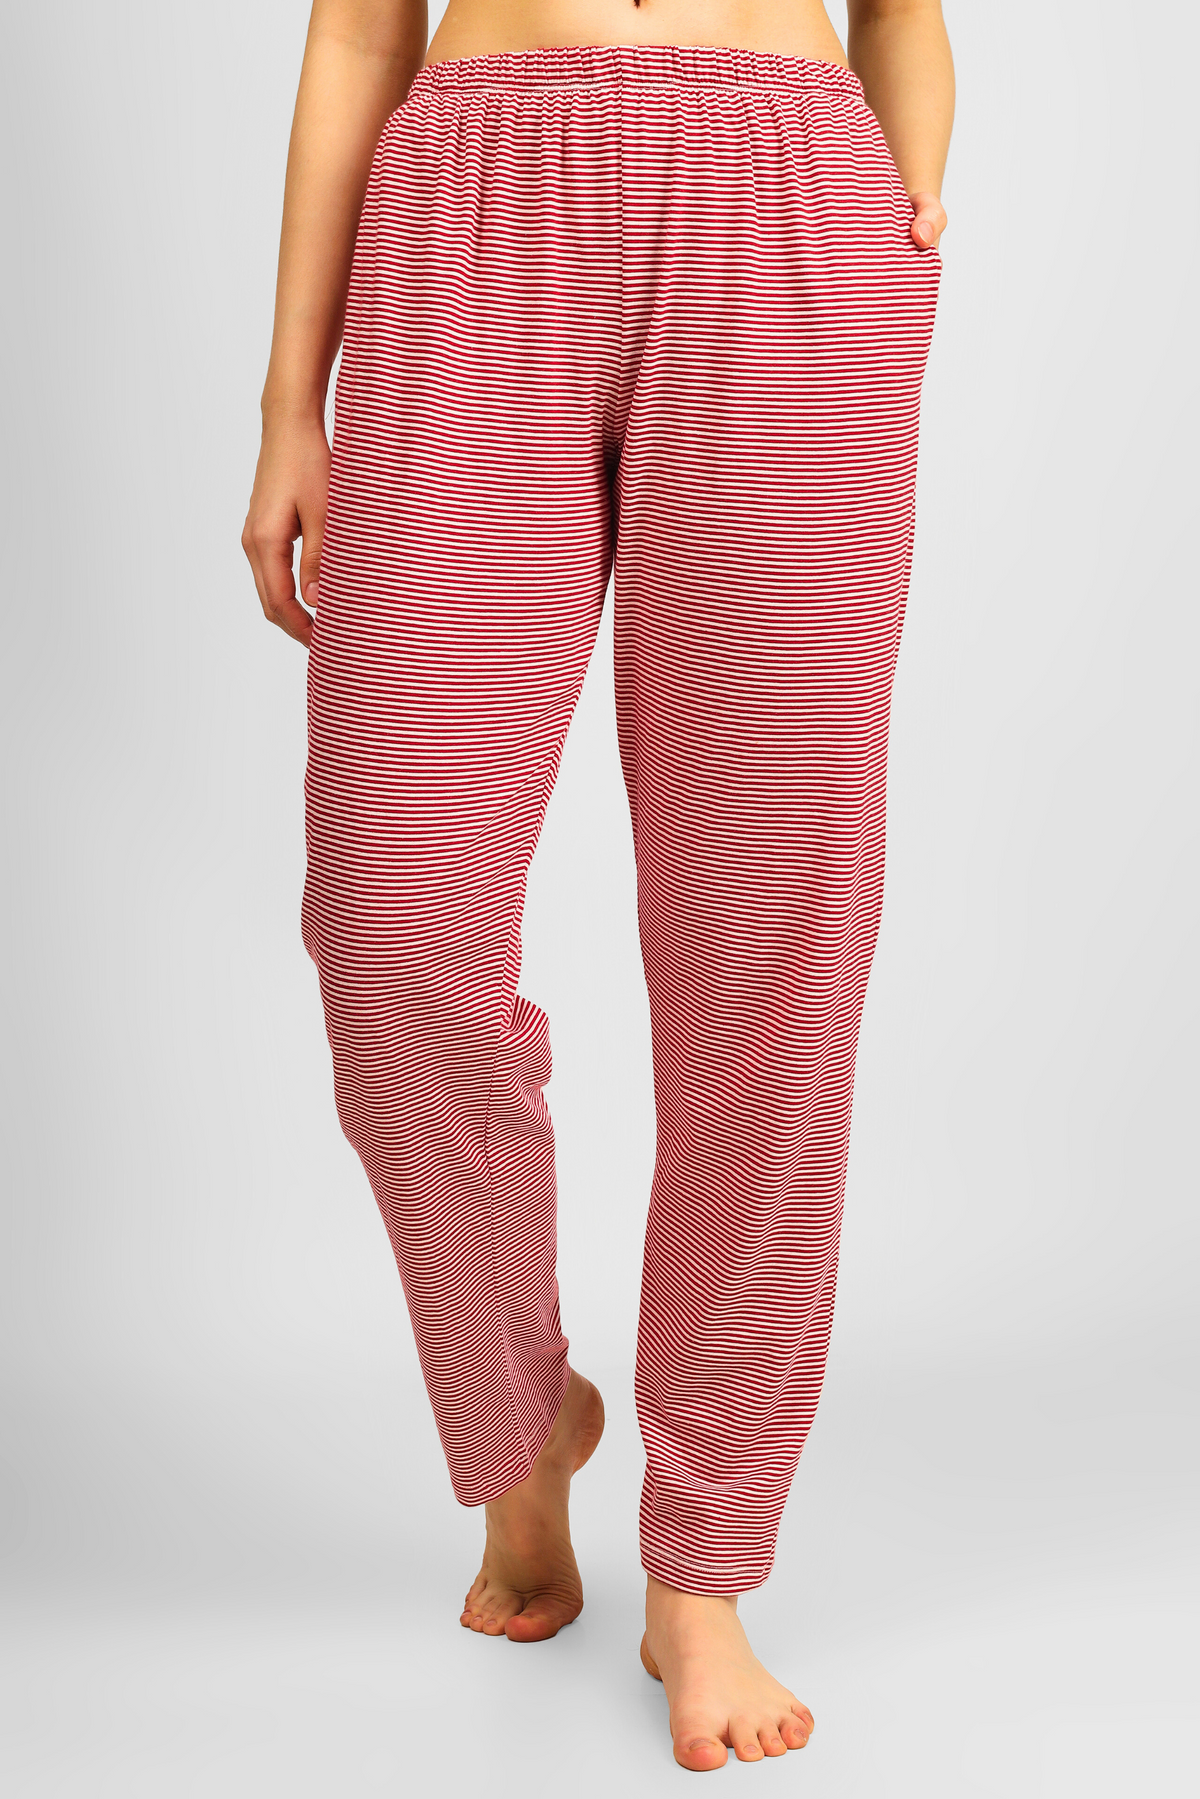 Make A Wish Pyjama Set